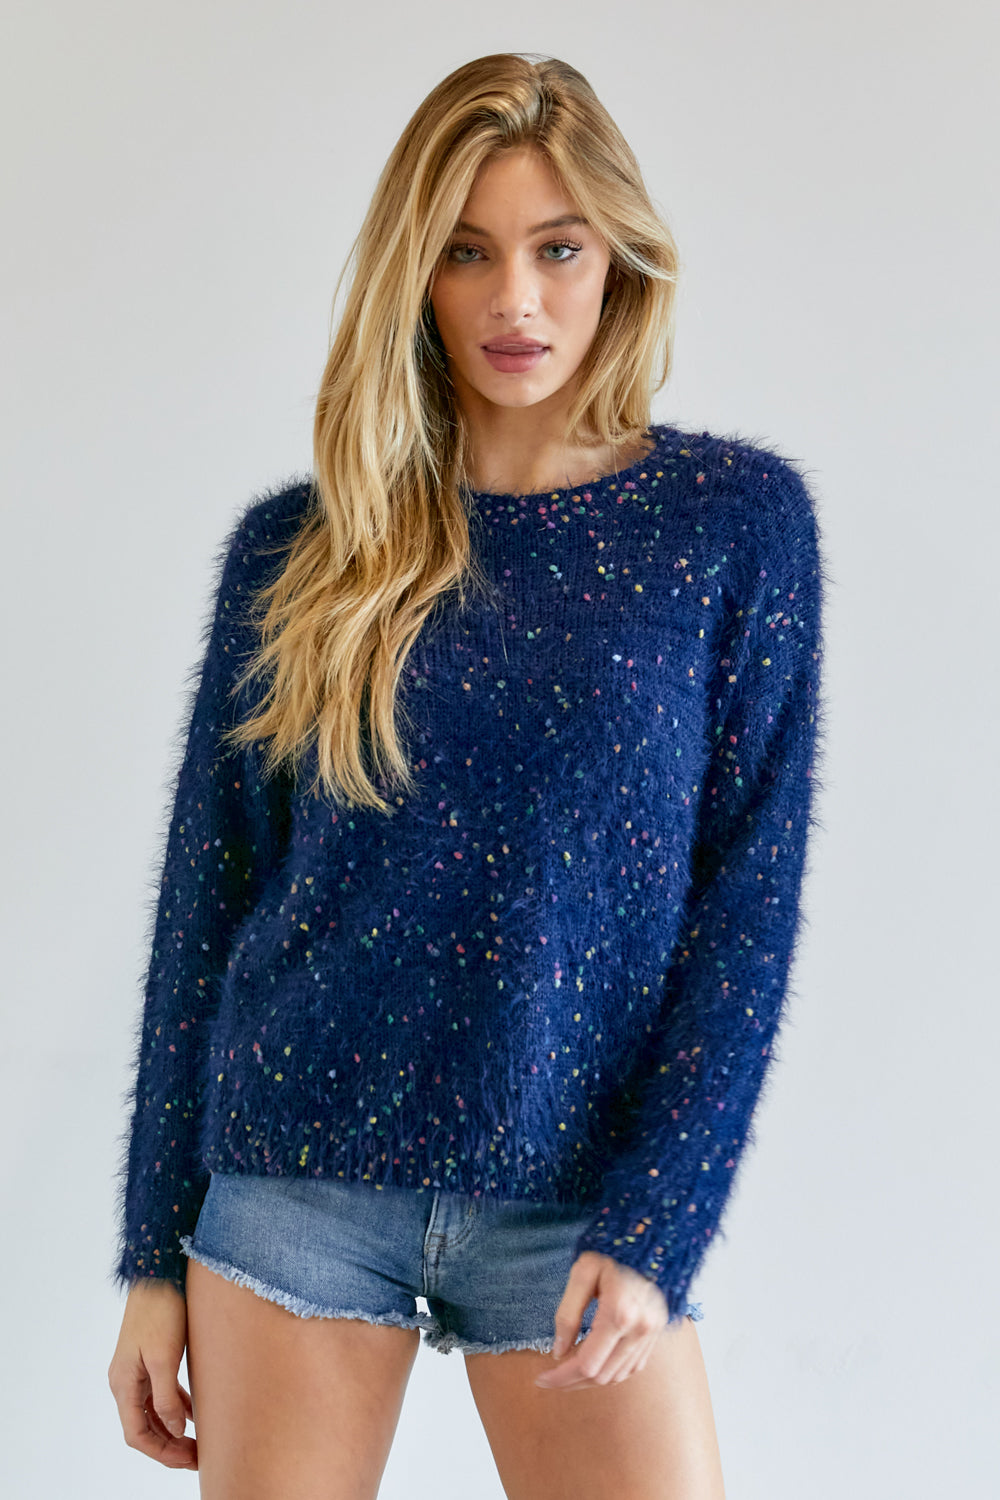 Cute Multi Color Polak Dot Sweater - LOLA LUXE